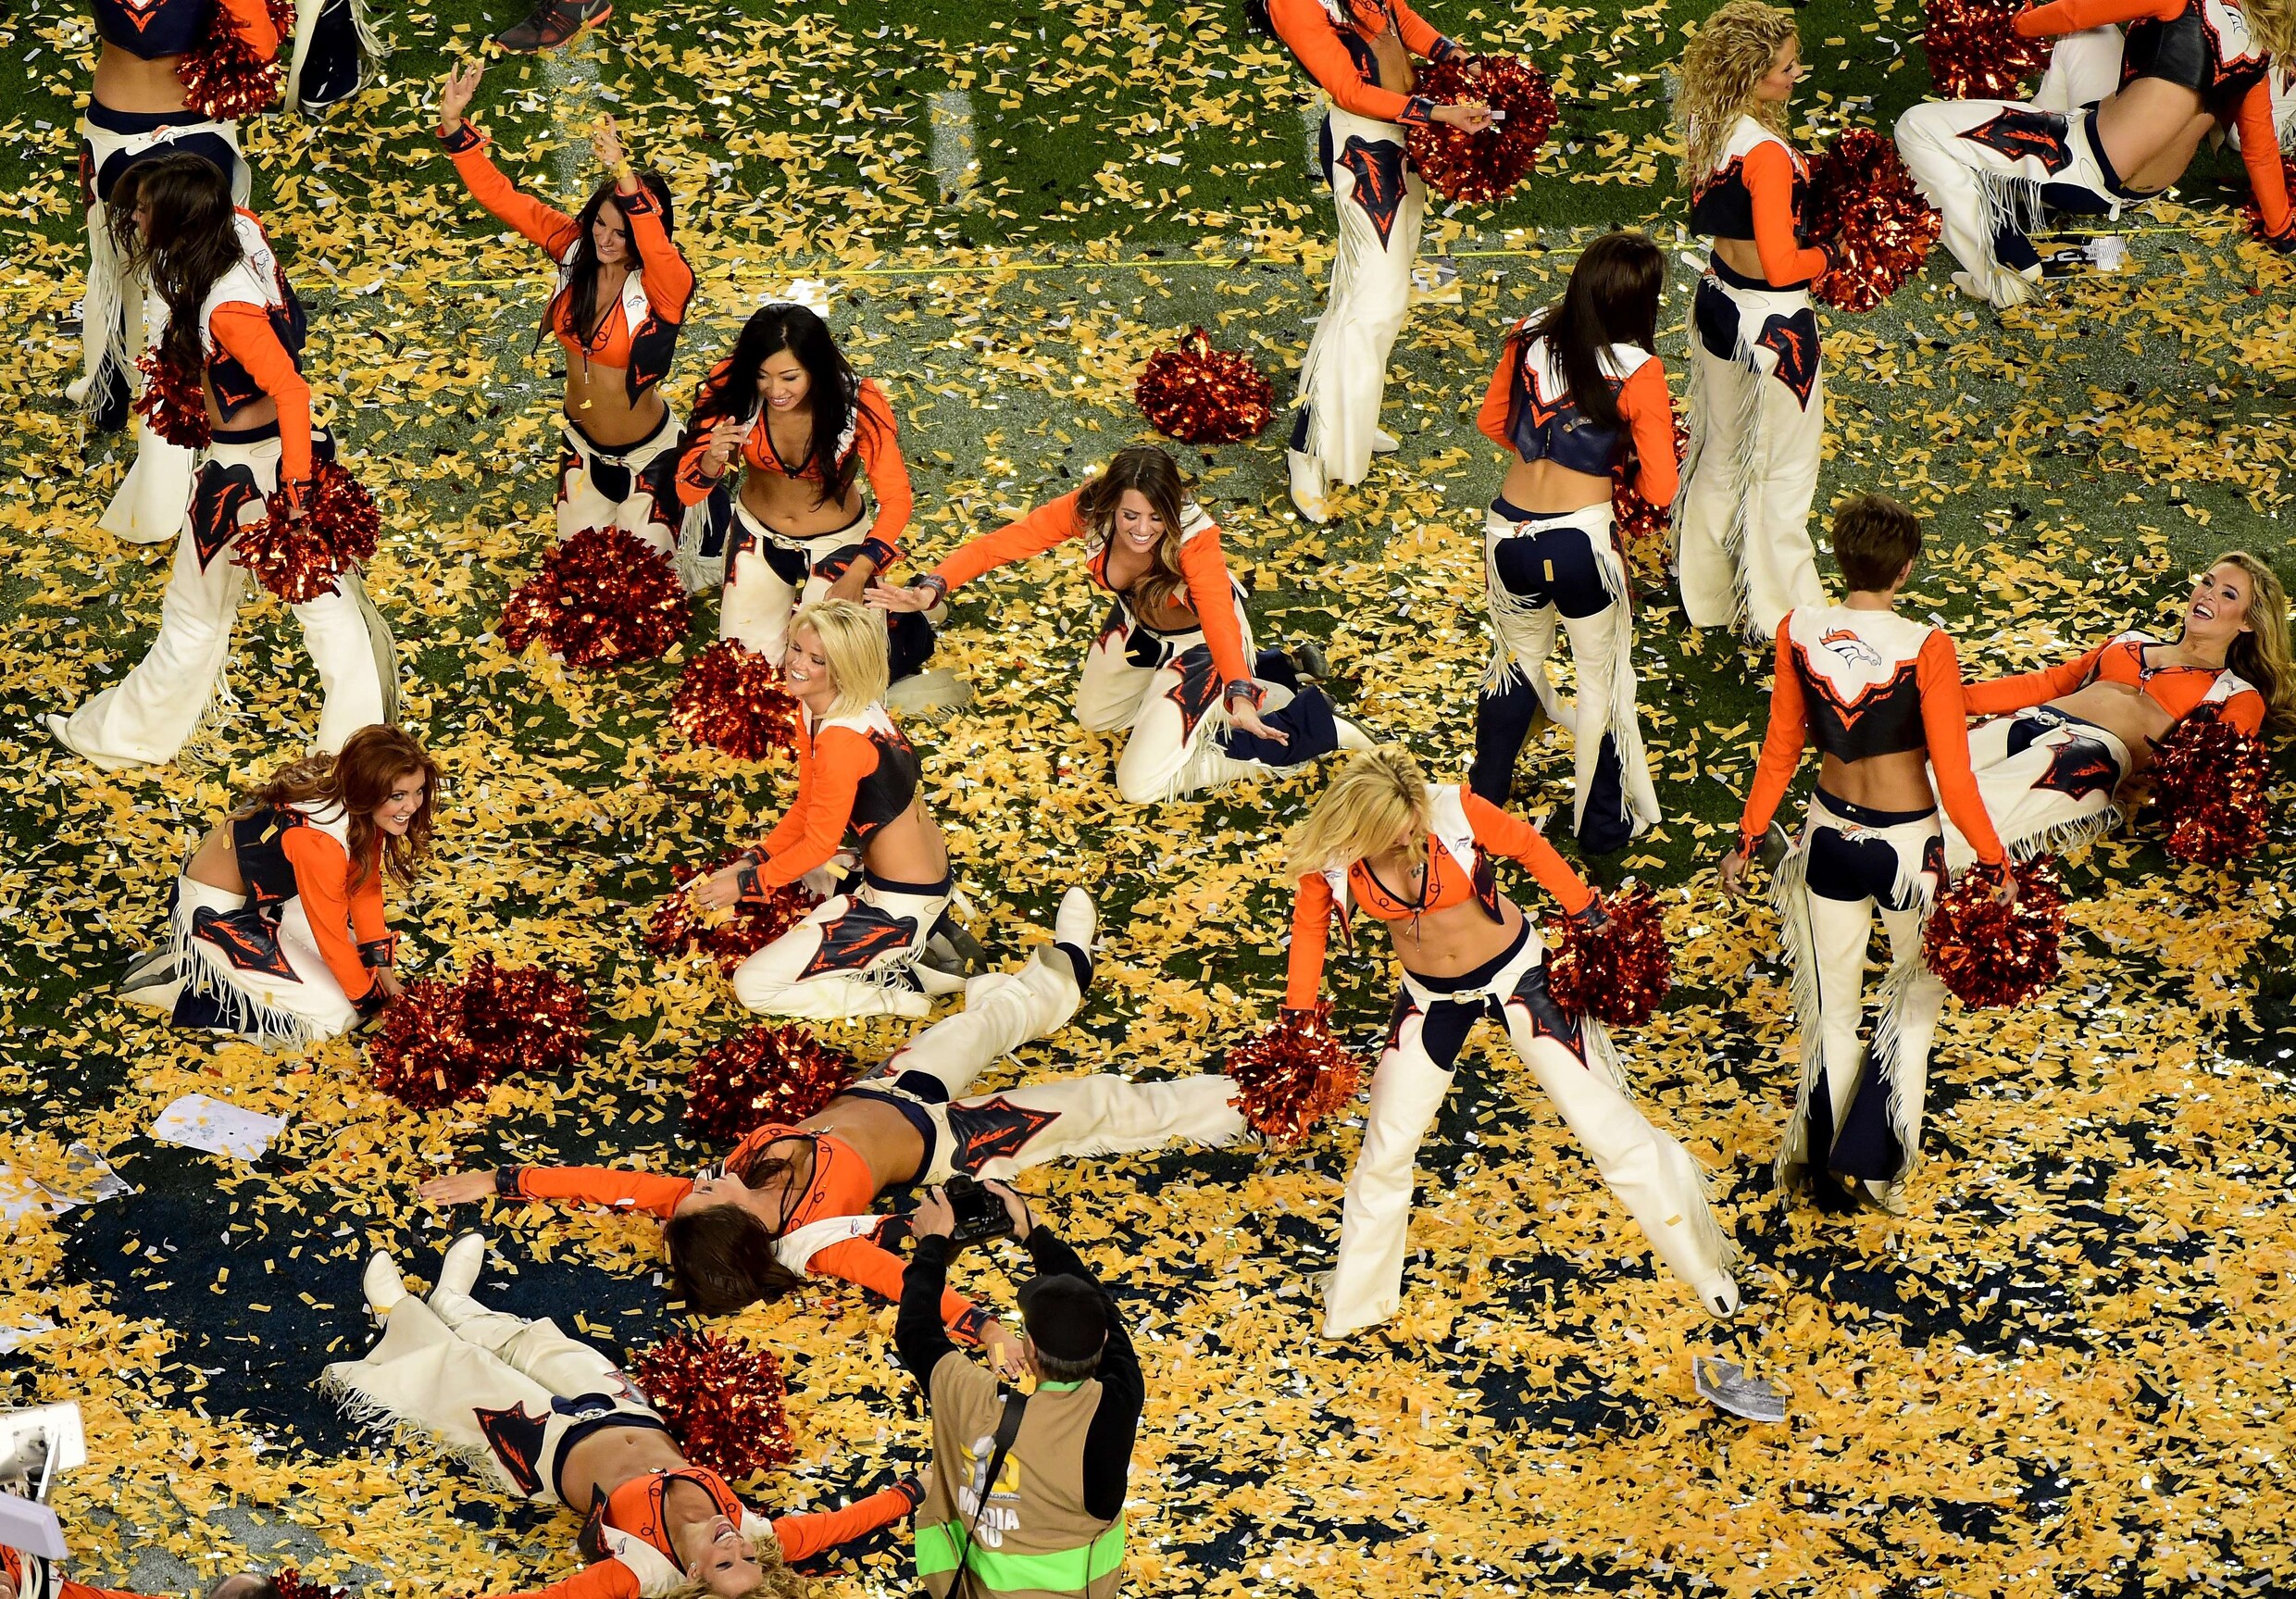 Denver Broncos wint vijftigste Super Bowl